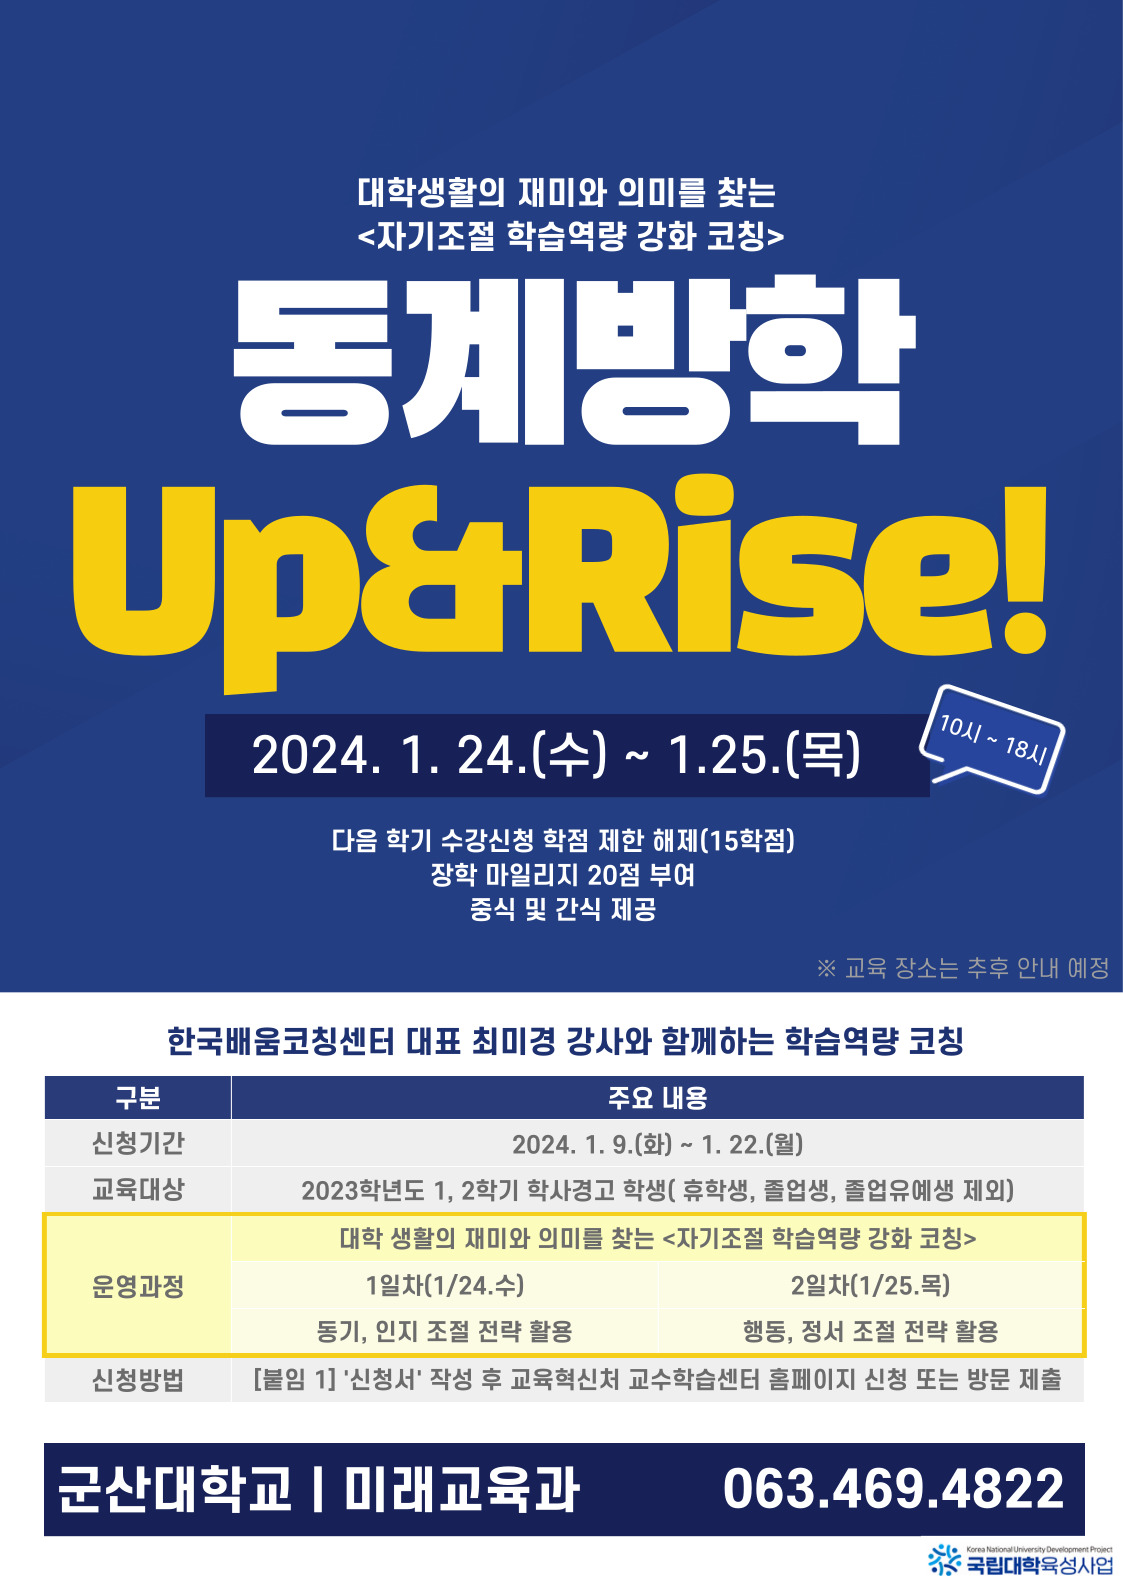 Up&Rise! 방학특강 <자기조절 학습역량 강화> 신청